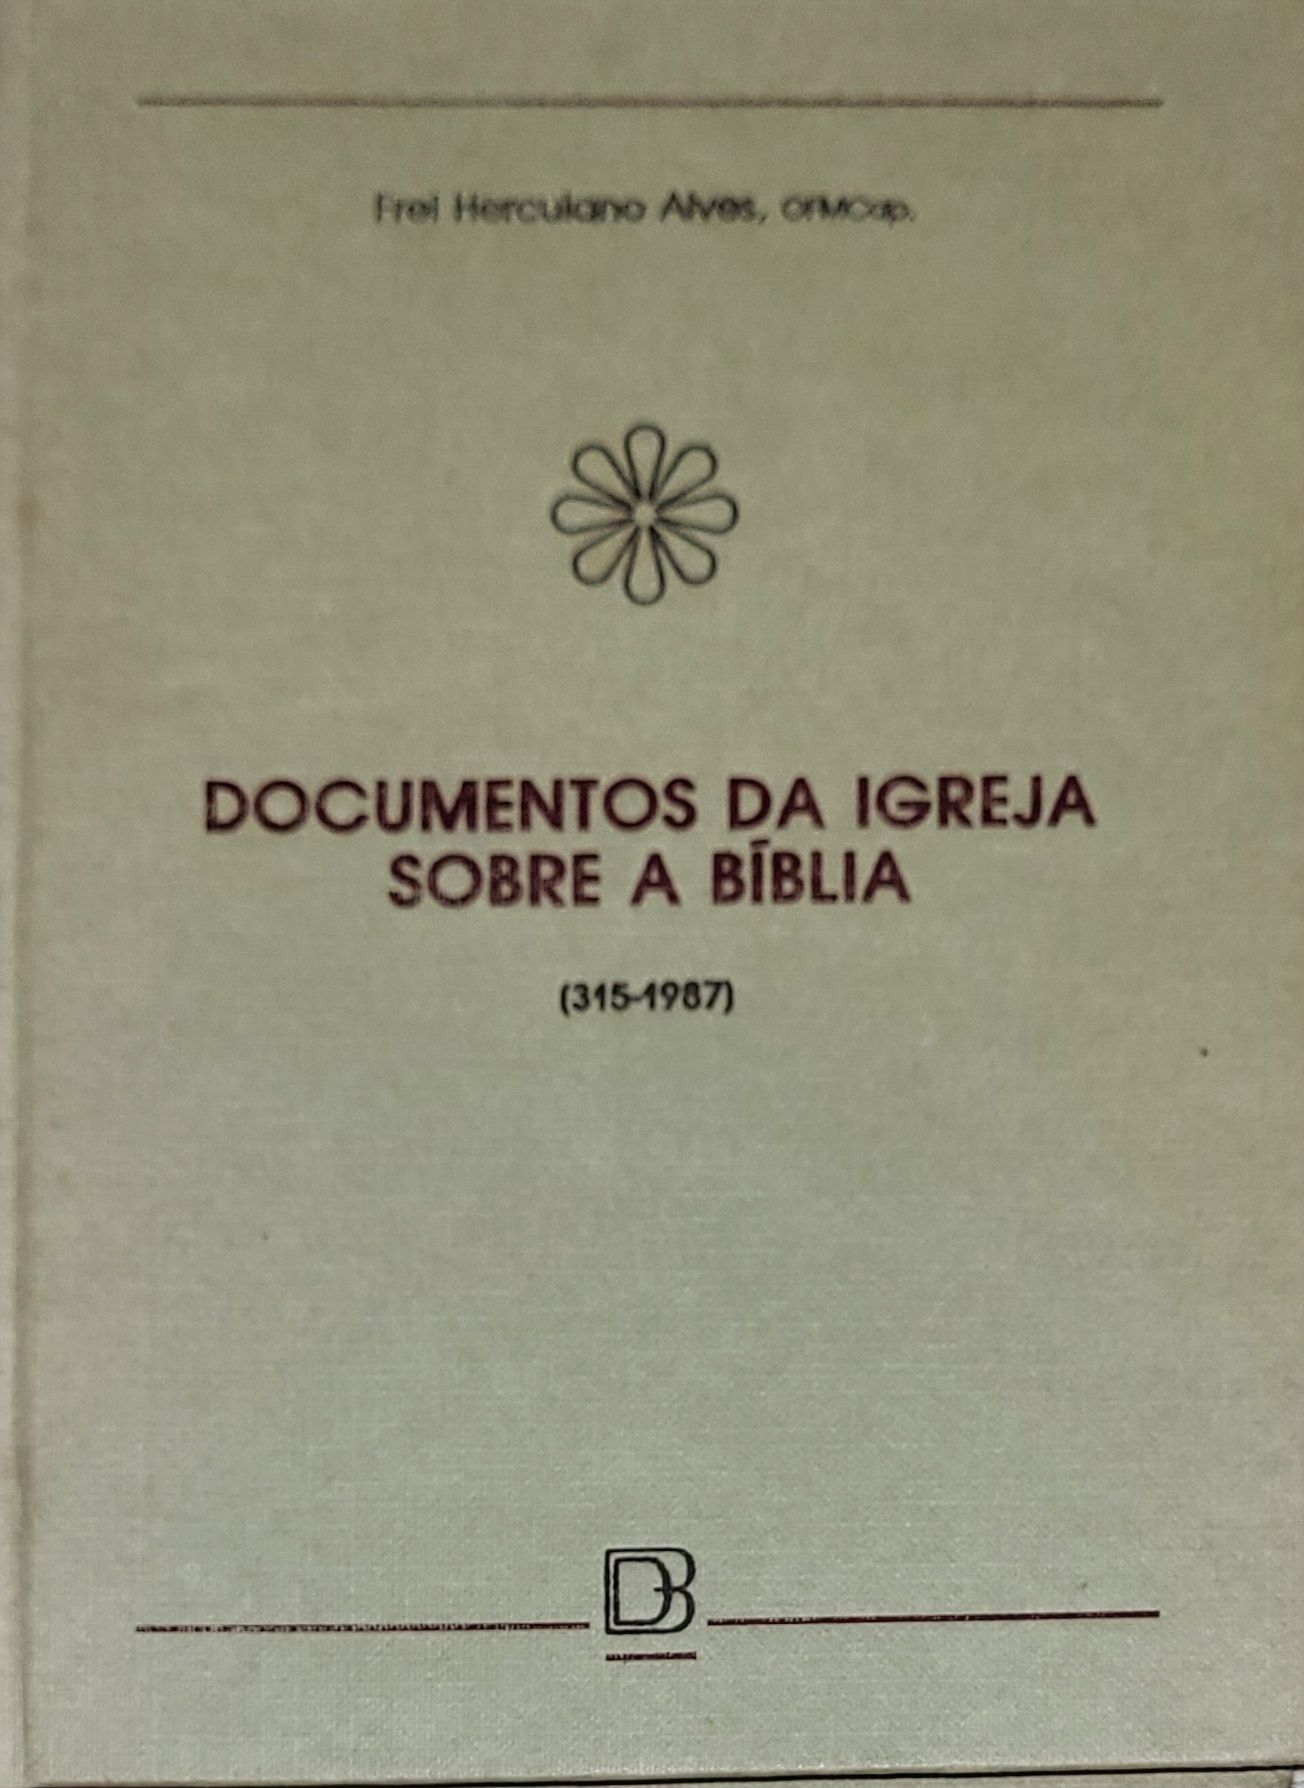 Livro Documentos da Igreja Sobre a Bíblia, de Frei Herculano Alves